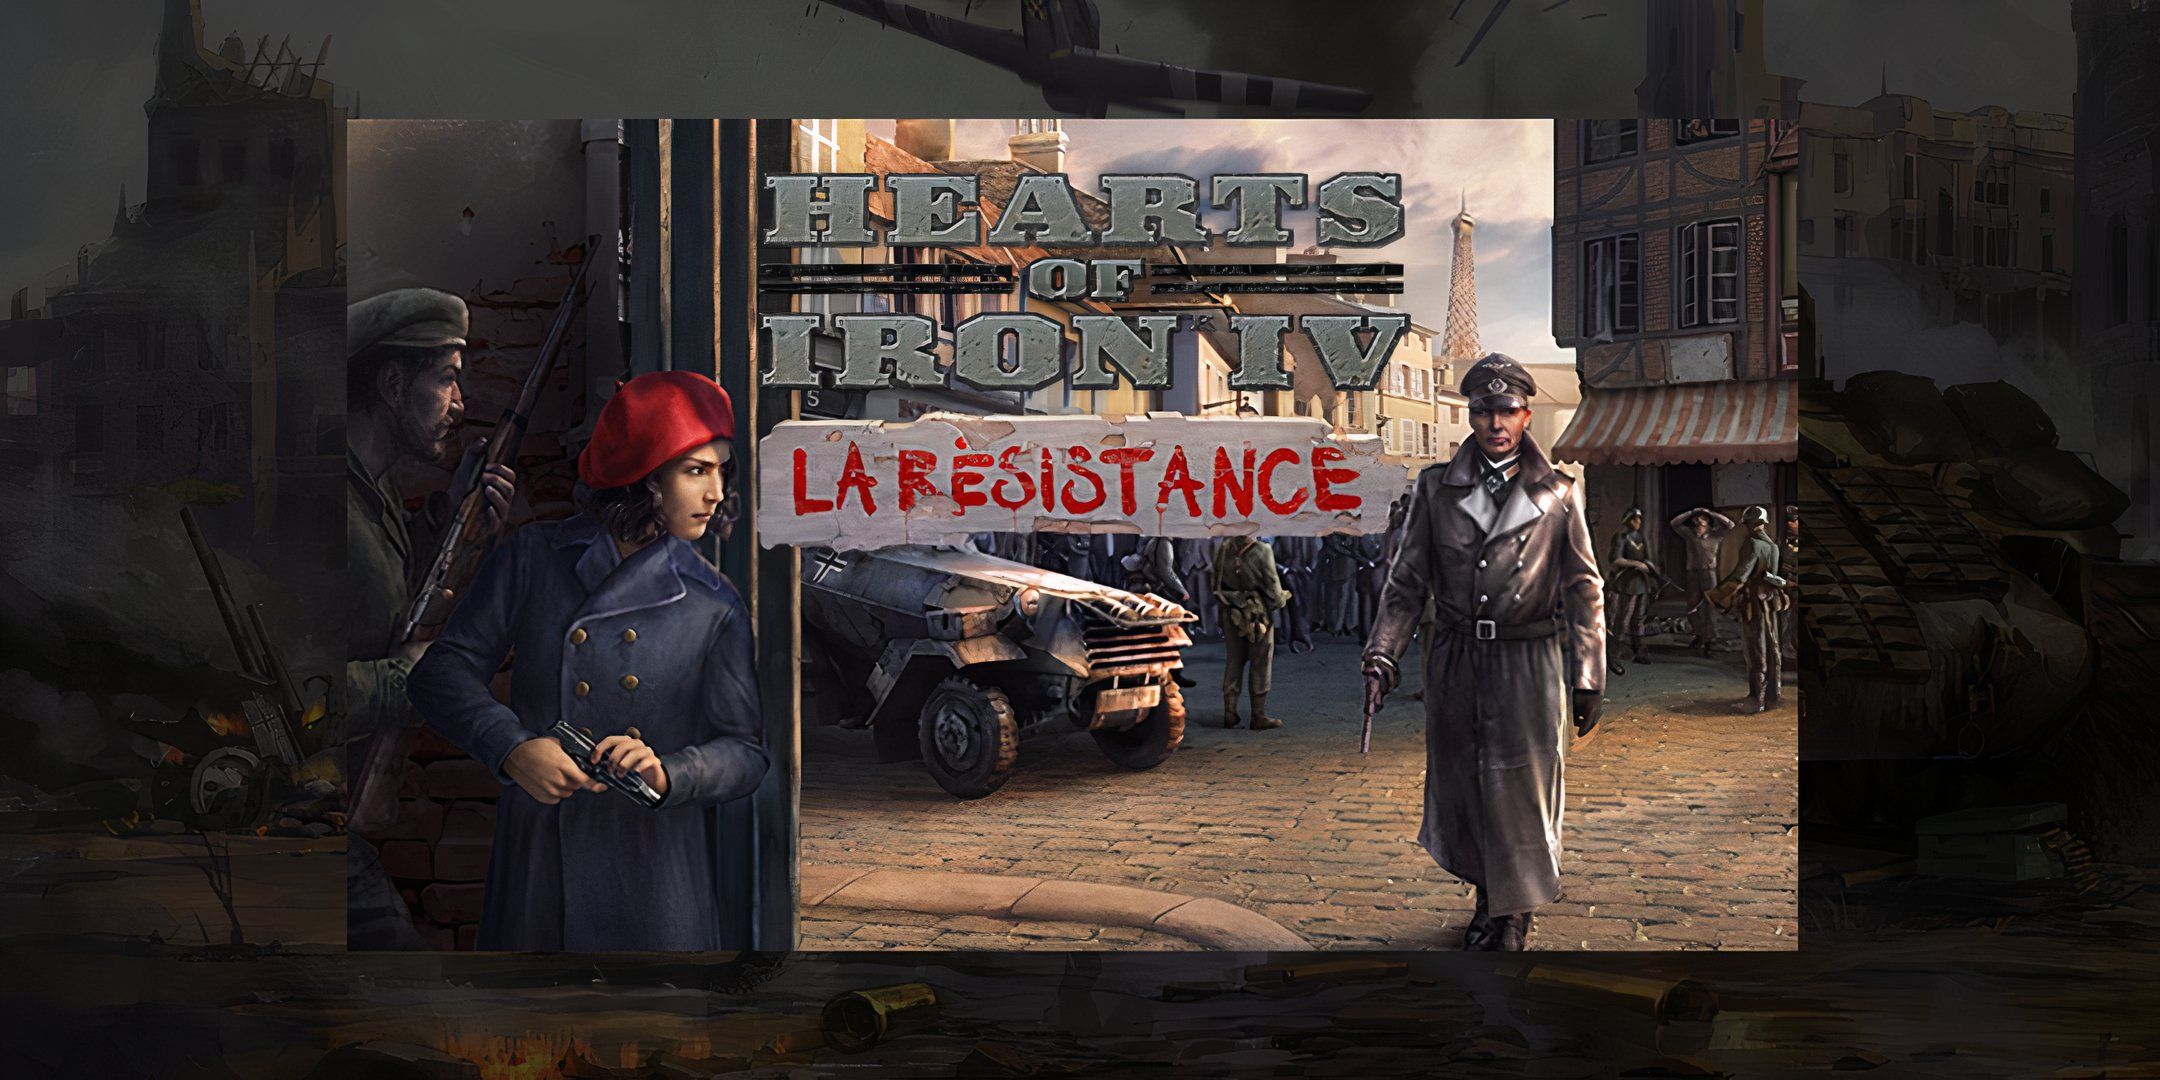 La Resistance